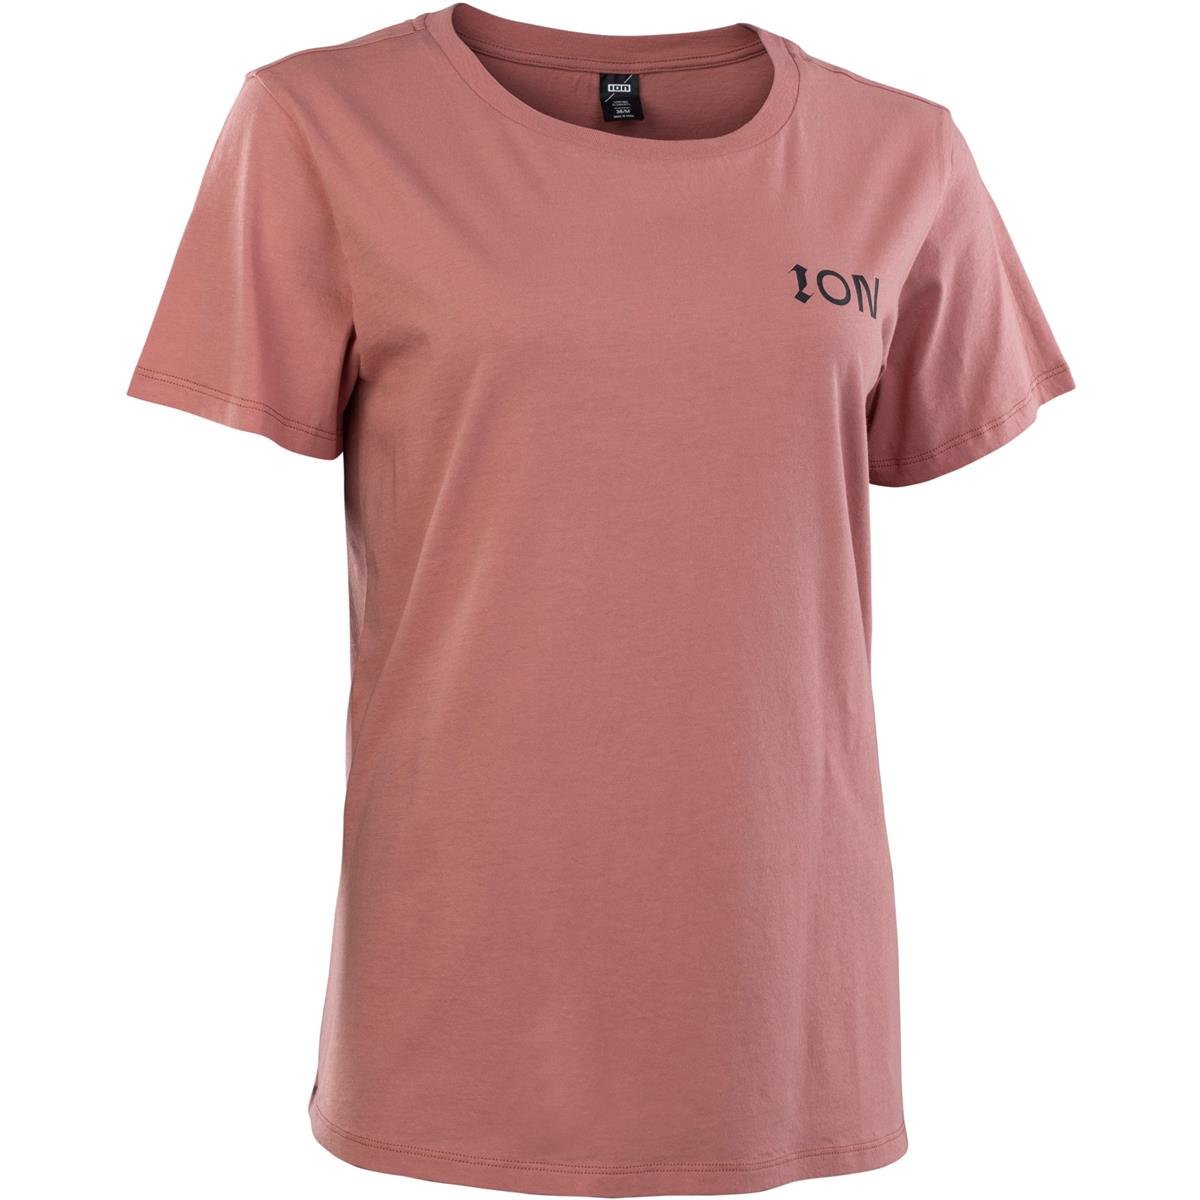 ION Girls T-Shirt Stoked Utah Red